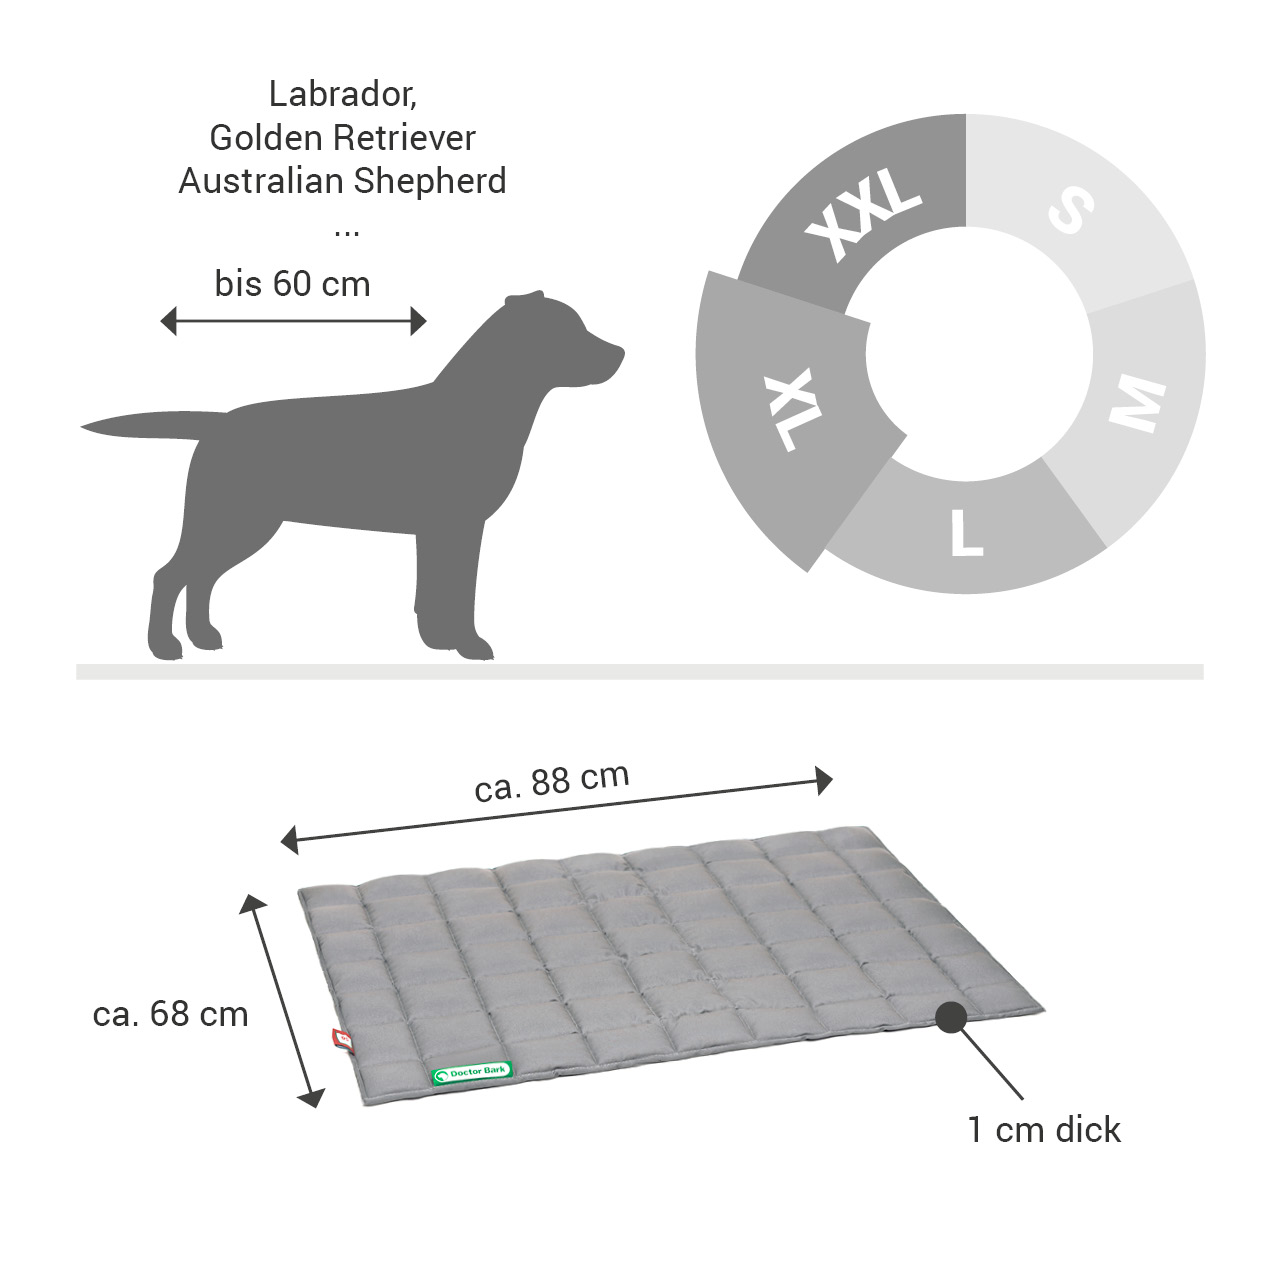 gepolsterte Einlegedecke für Doctor Bark Hundebett Gr. XL - hellgrau